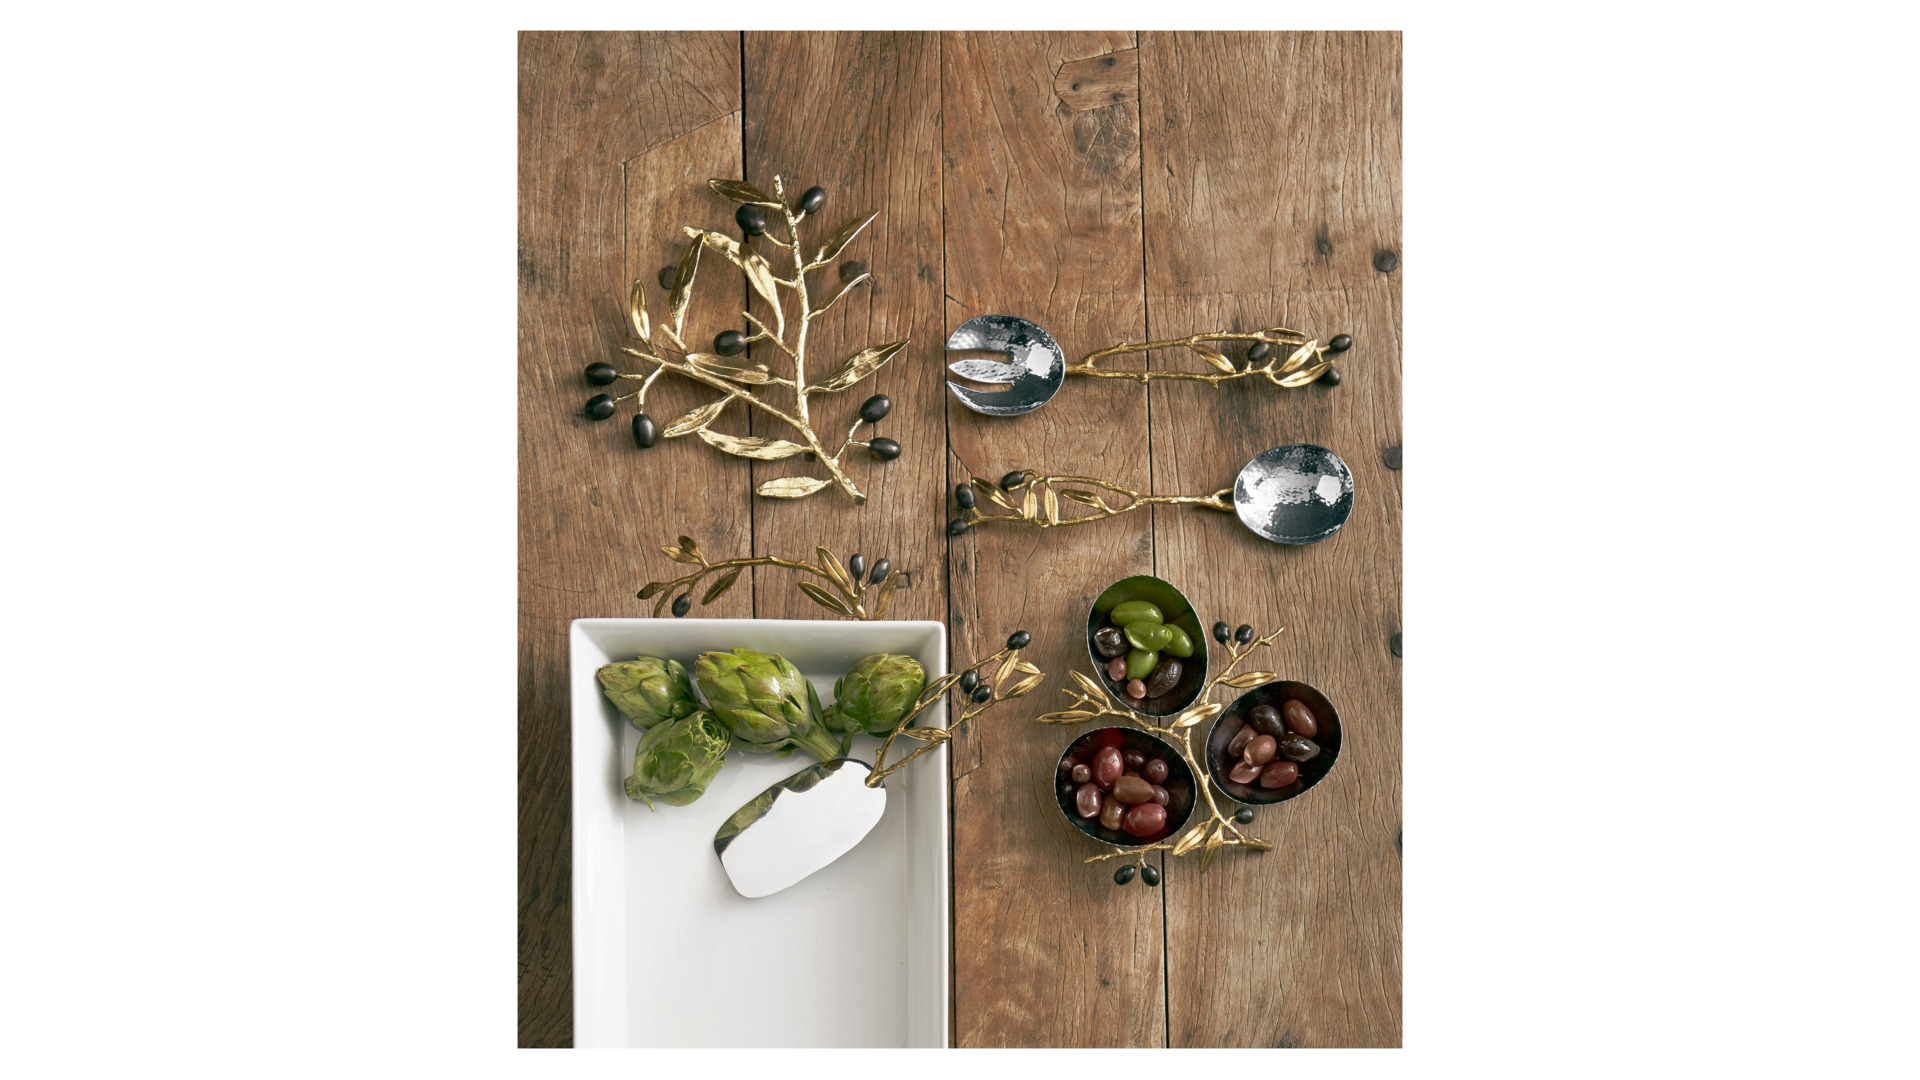 Блюдо для запекания Michael Aram Золотая оливковая ветвь 40х22 см, фарфор